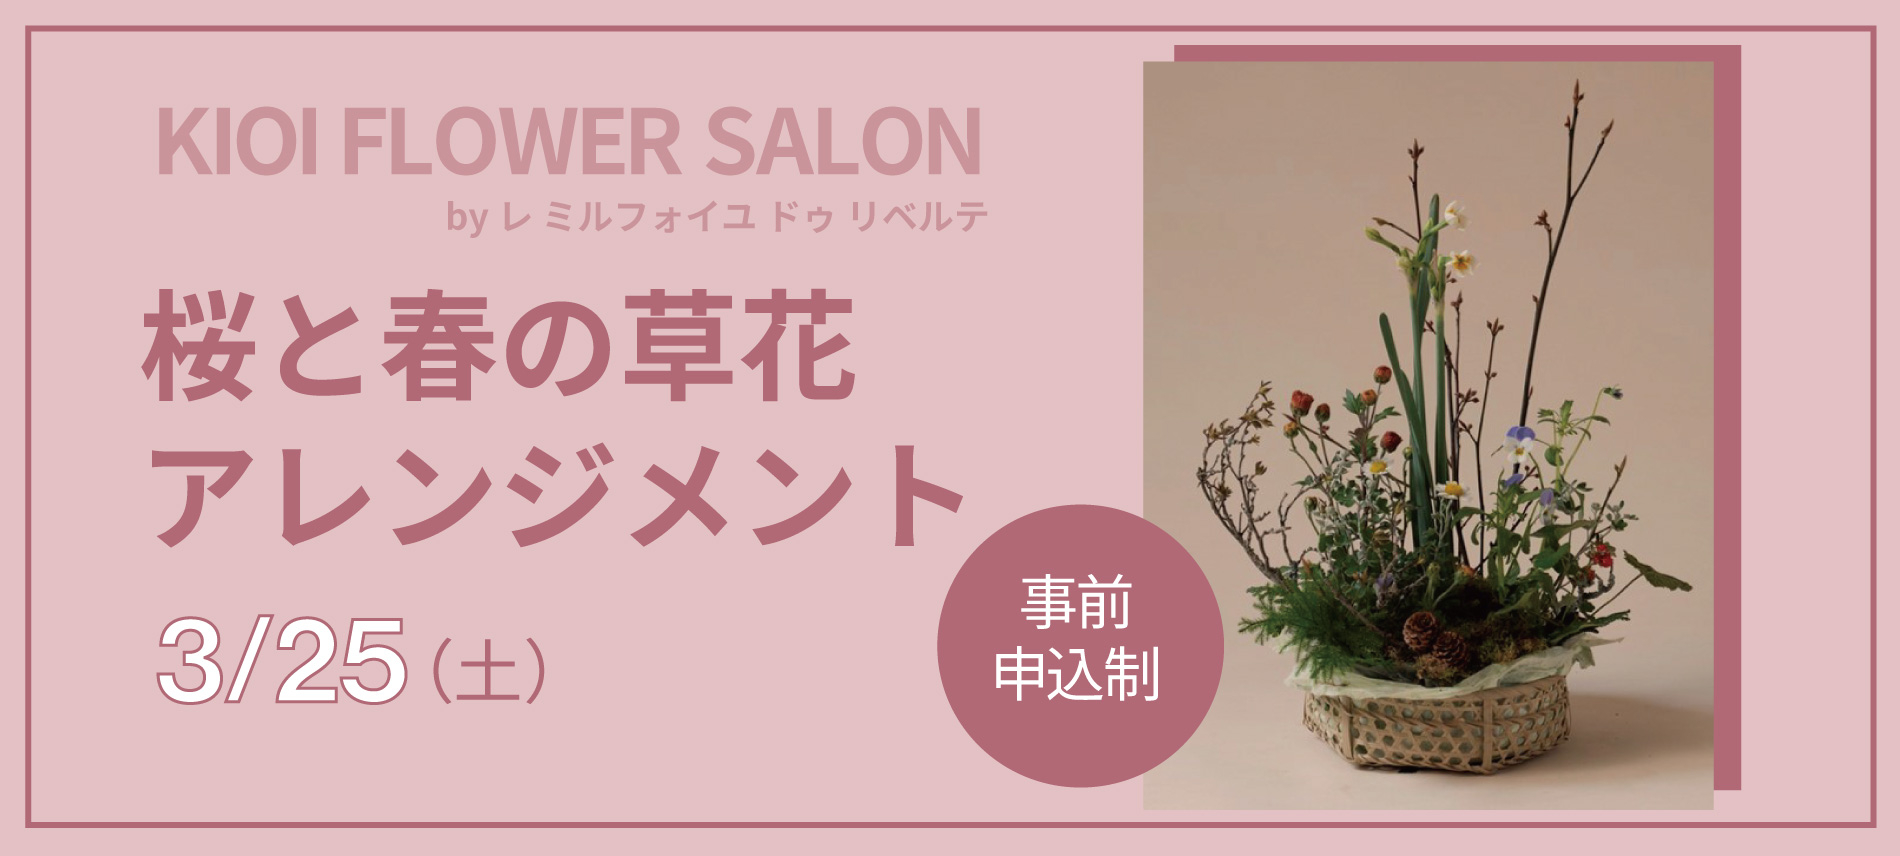 【紀尾井花の駅】KIOI FLOWER SALON 桜と春の草花アレンジメント